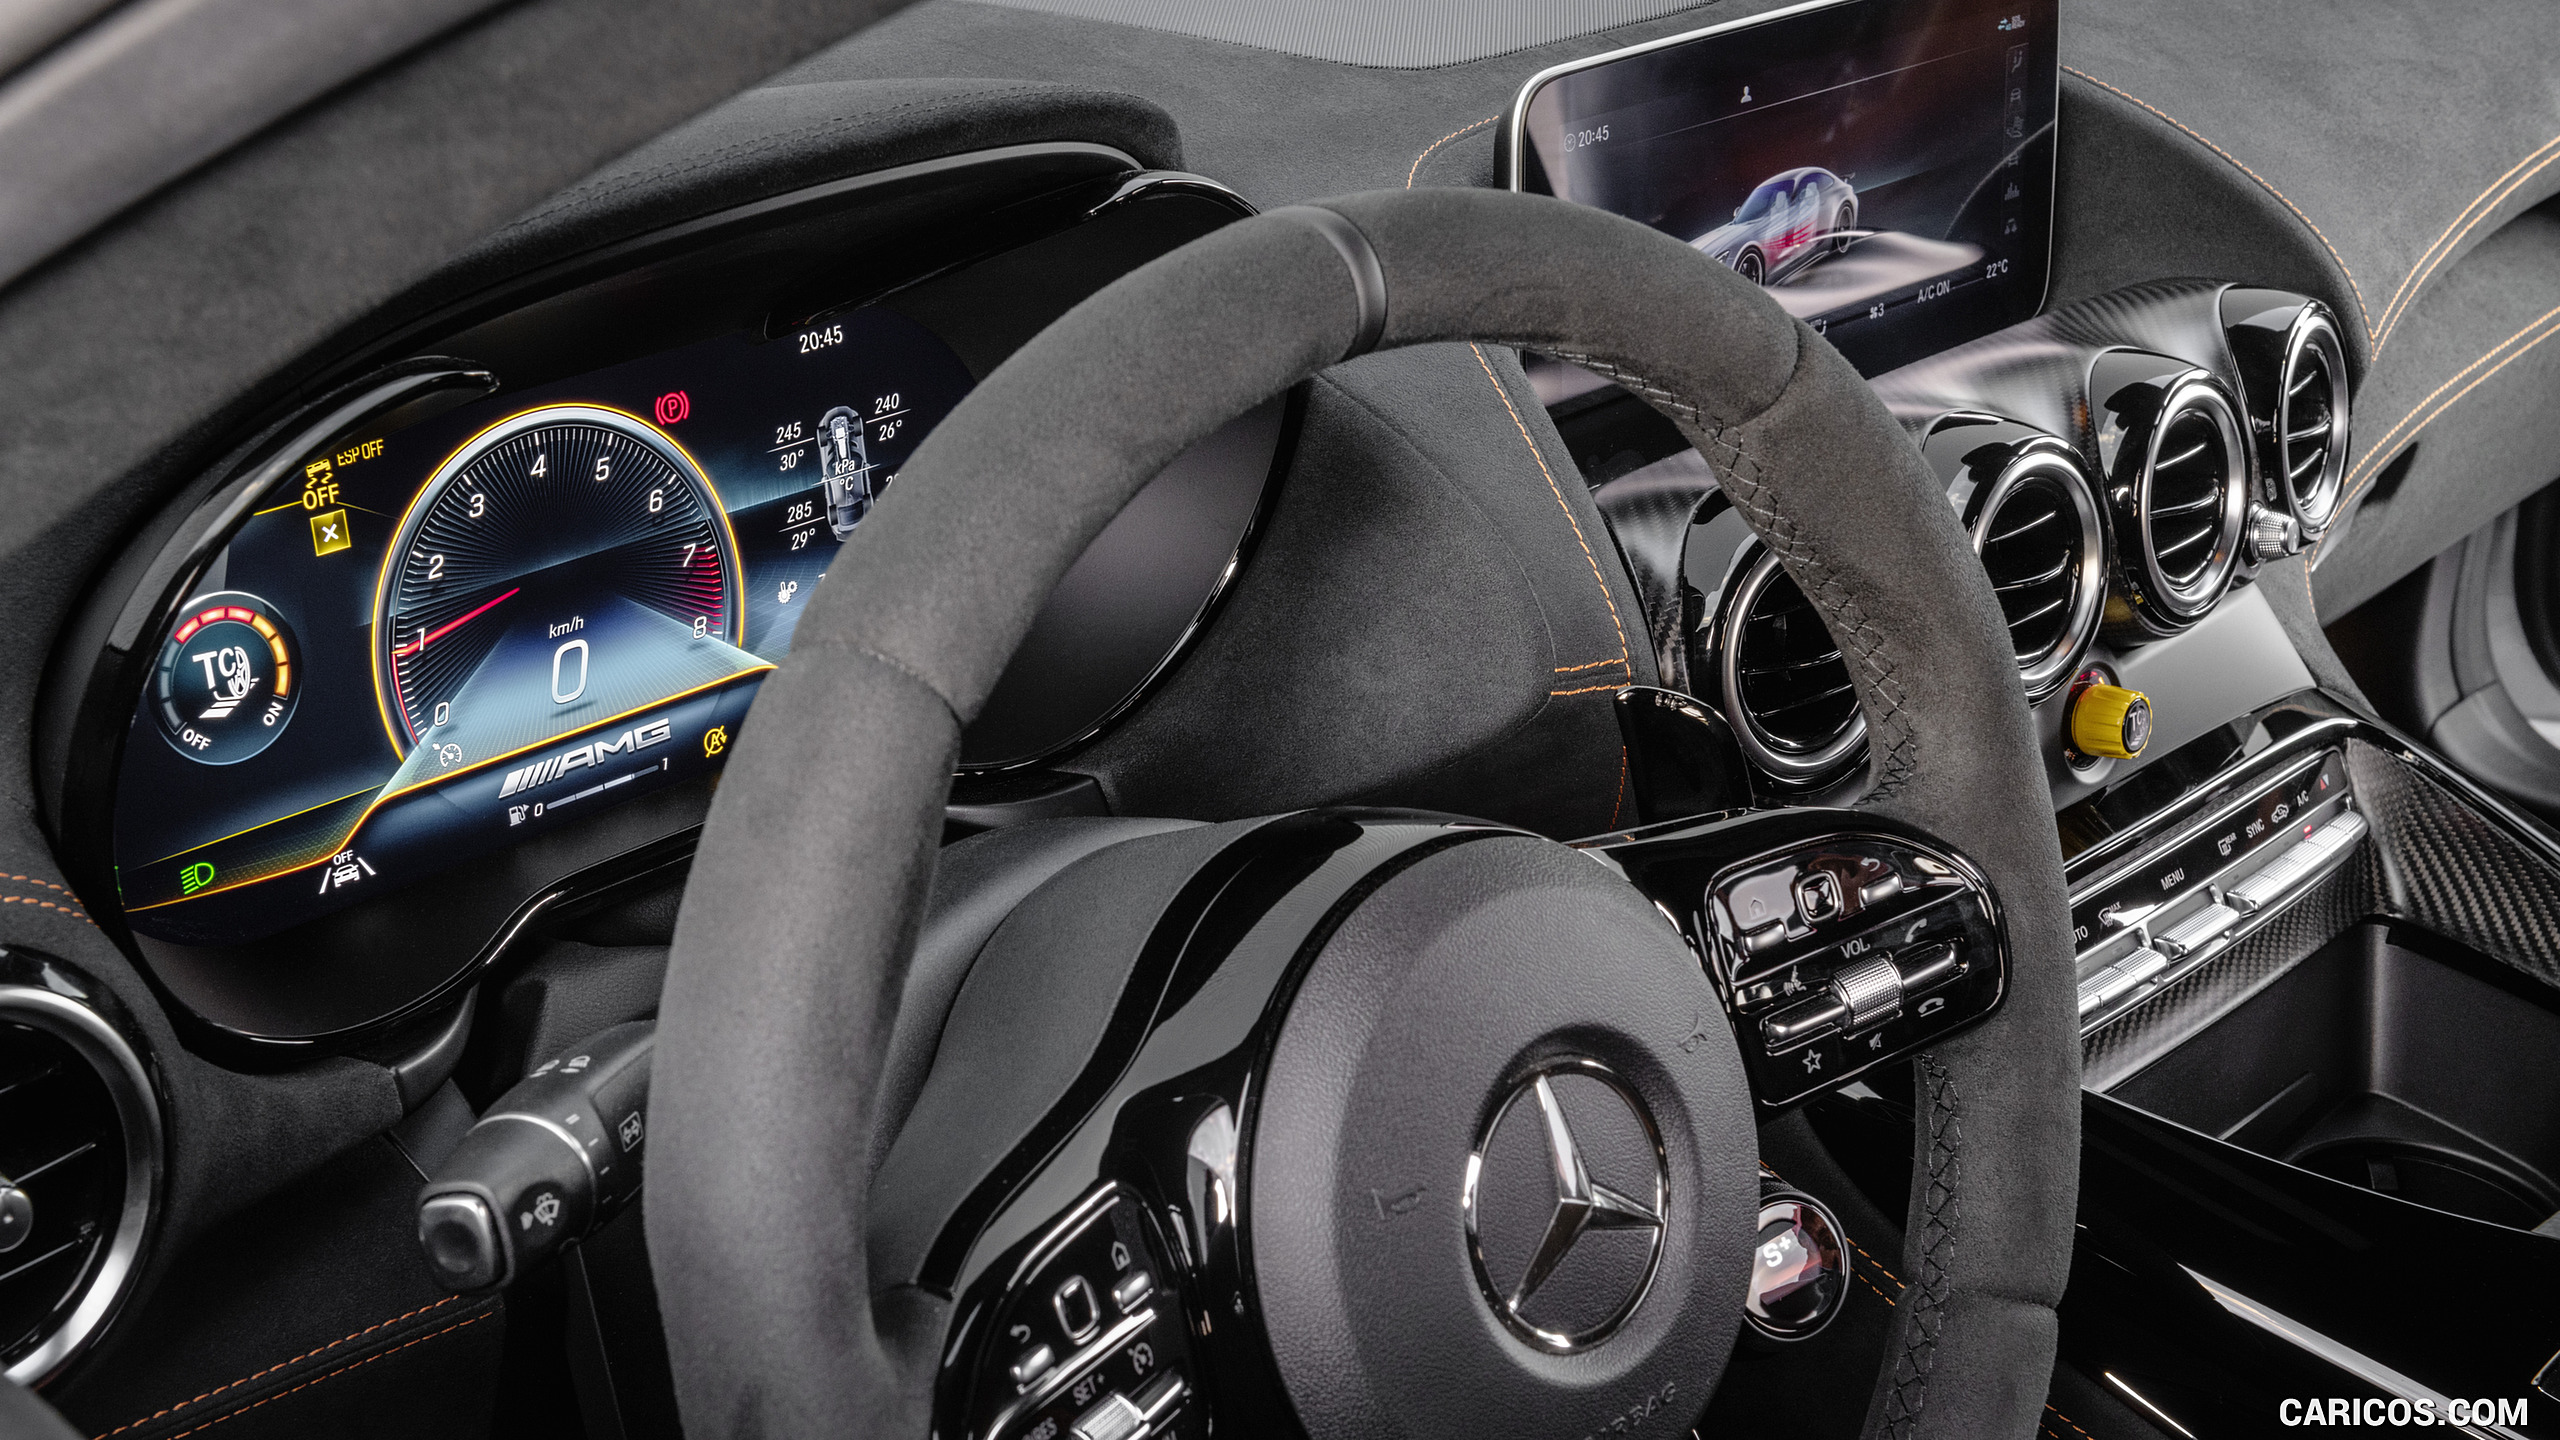 2021 Mercedes-AMG GT Black Series - Digital Instrument Cluster, #82 of 215